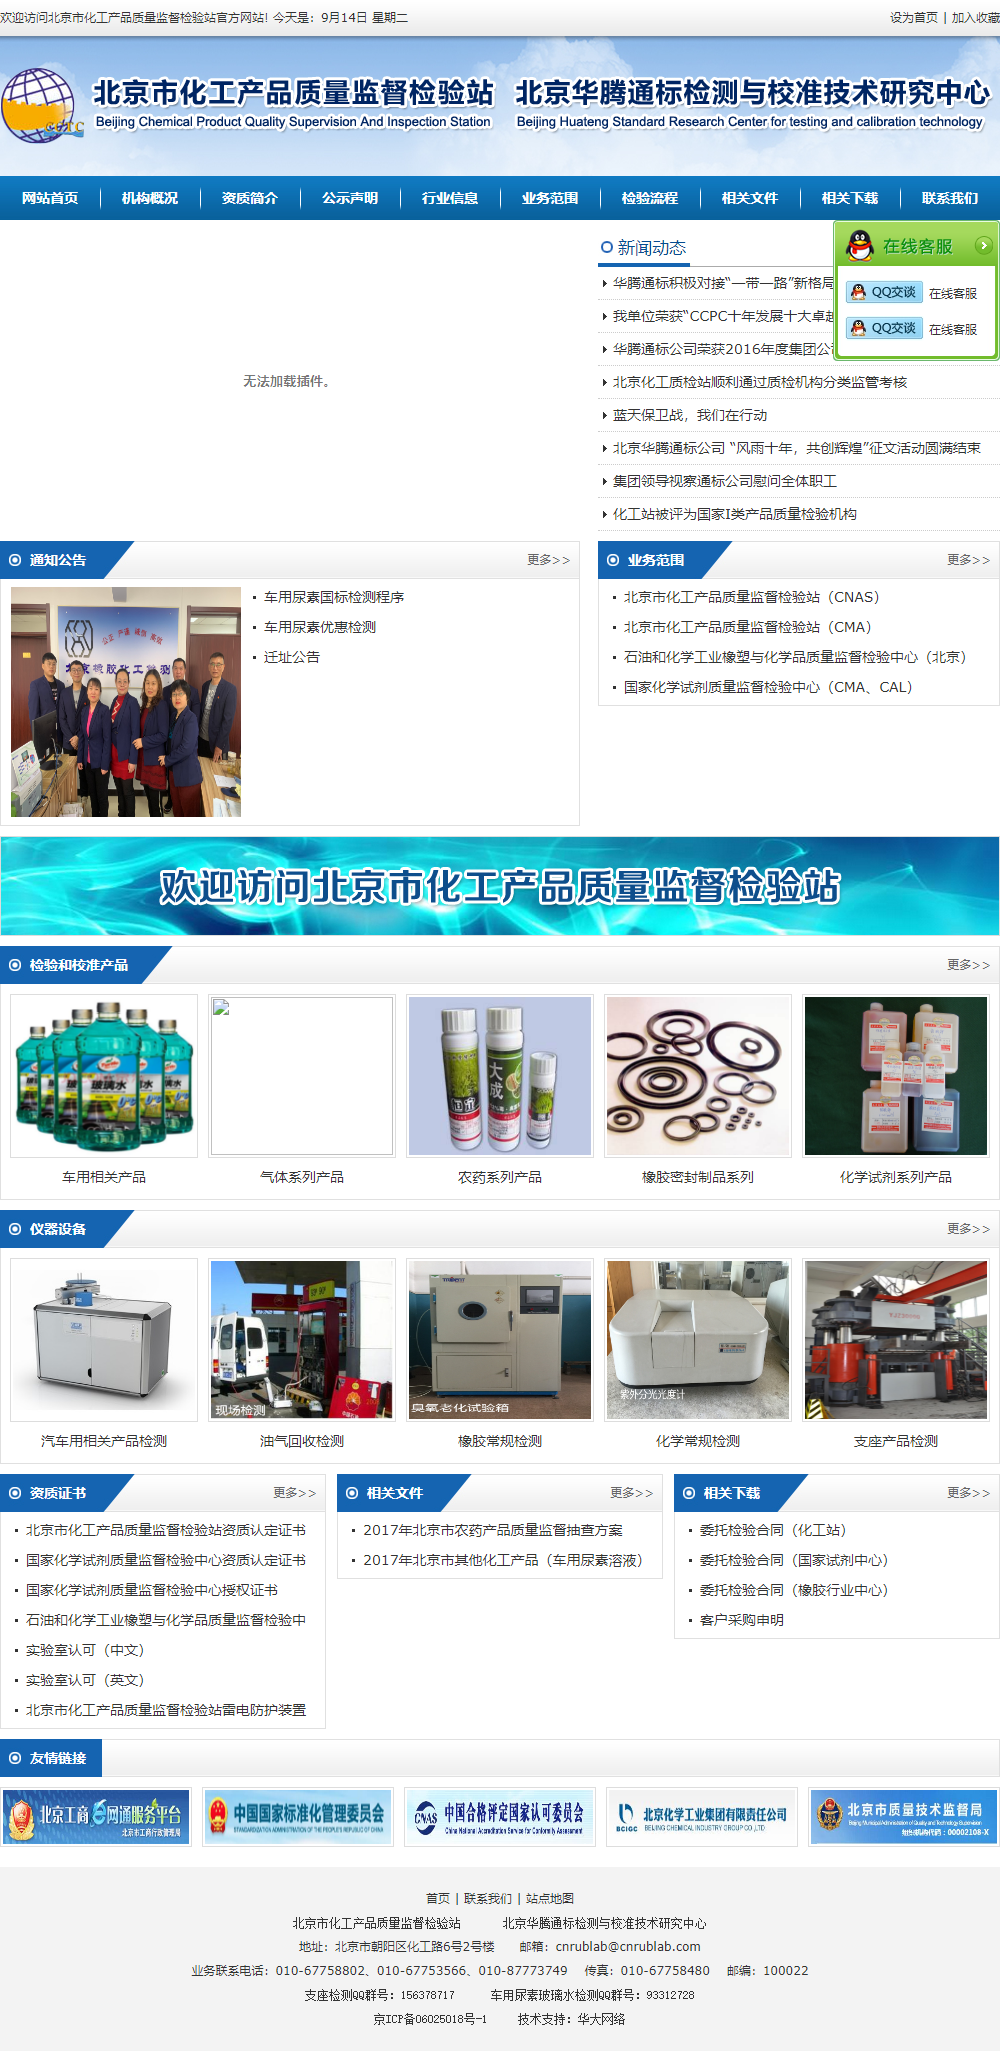 北京市化工产品质量监督检验站（国家化学试剂质量监督检验中心、石油和化学工业橡塑与化学品质量监督检验中心（北京））网站案例